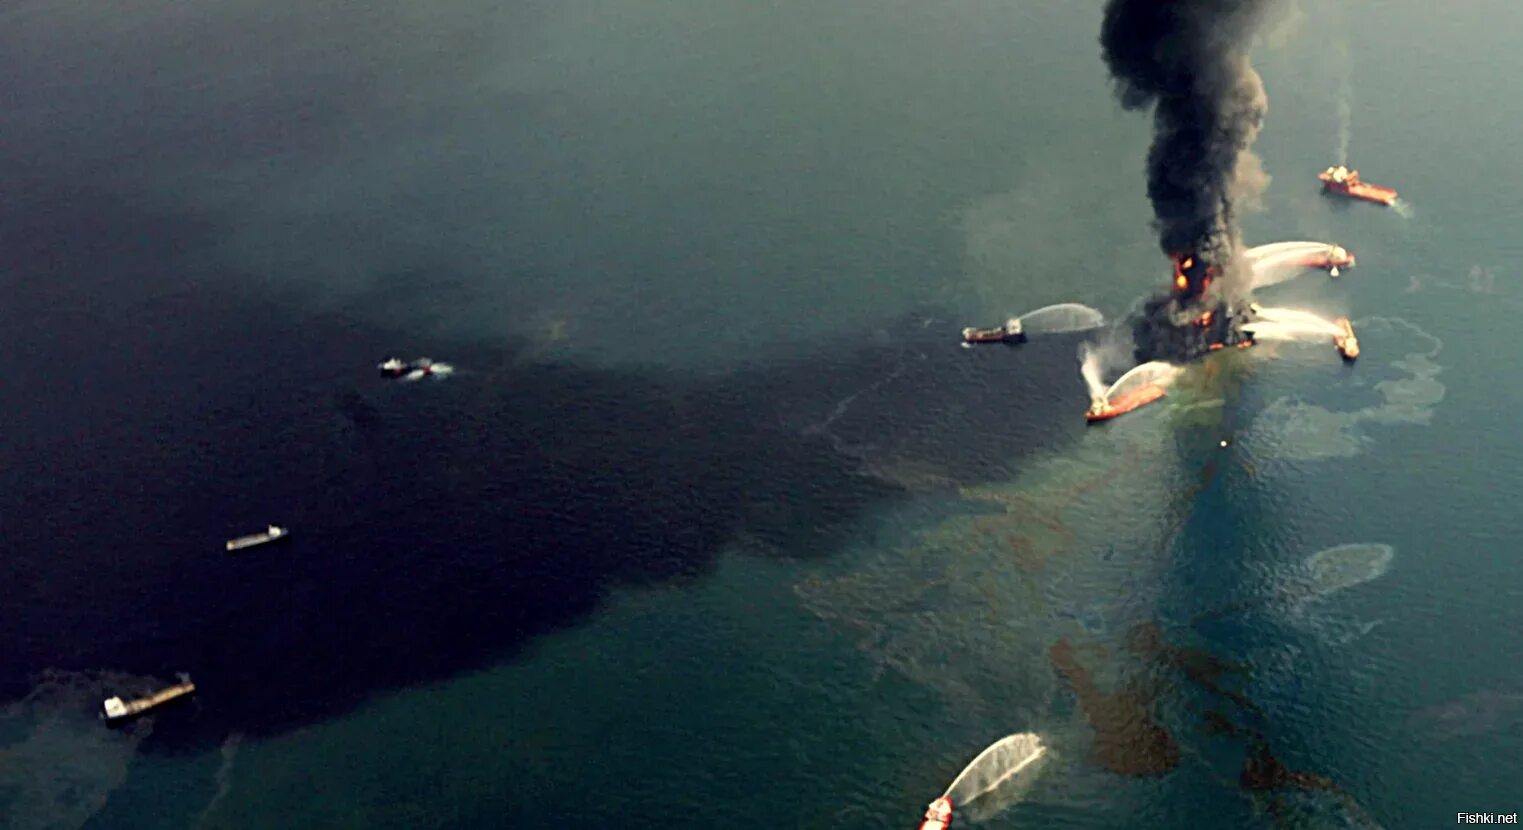 Разлив нефти в 2010 году в мексиканском заливе. Апрель 2010 мексиканский залив. Глубоководный Горизонт разлив нефти. Взрыв нефтяной платформы Deepwater Horizon - 20 апреля 2010 года.